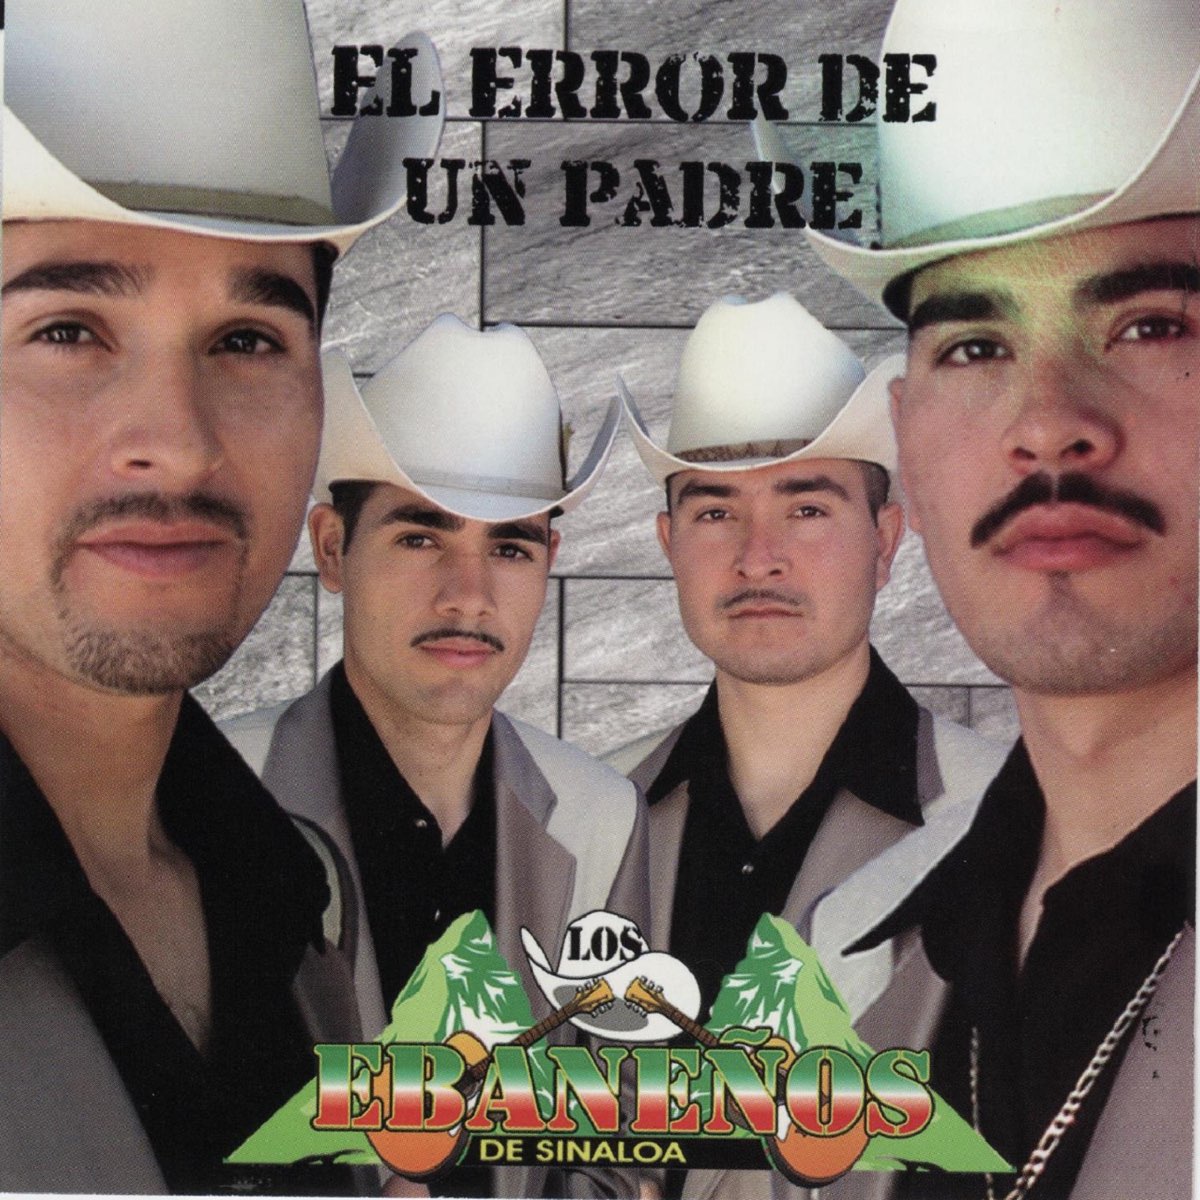 El Error de un Padre de Los Ebanenos de Sinaloa en Apple Music